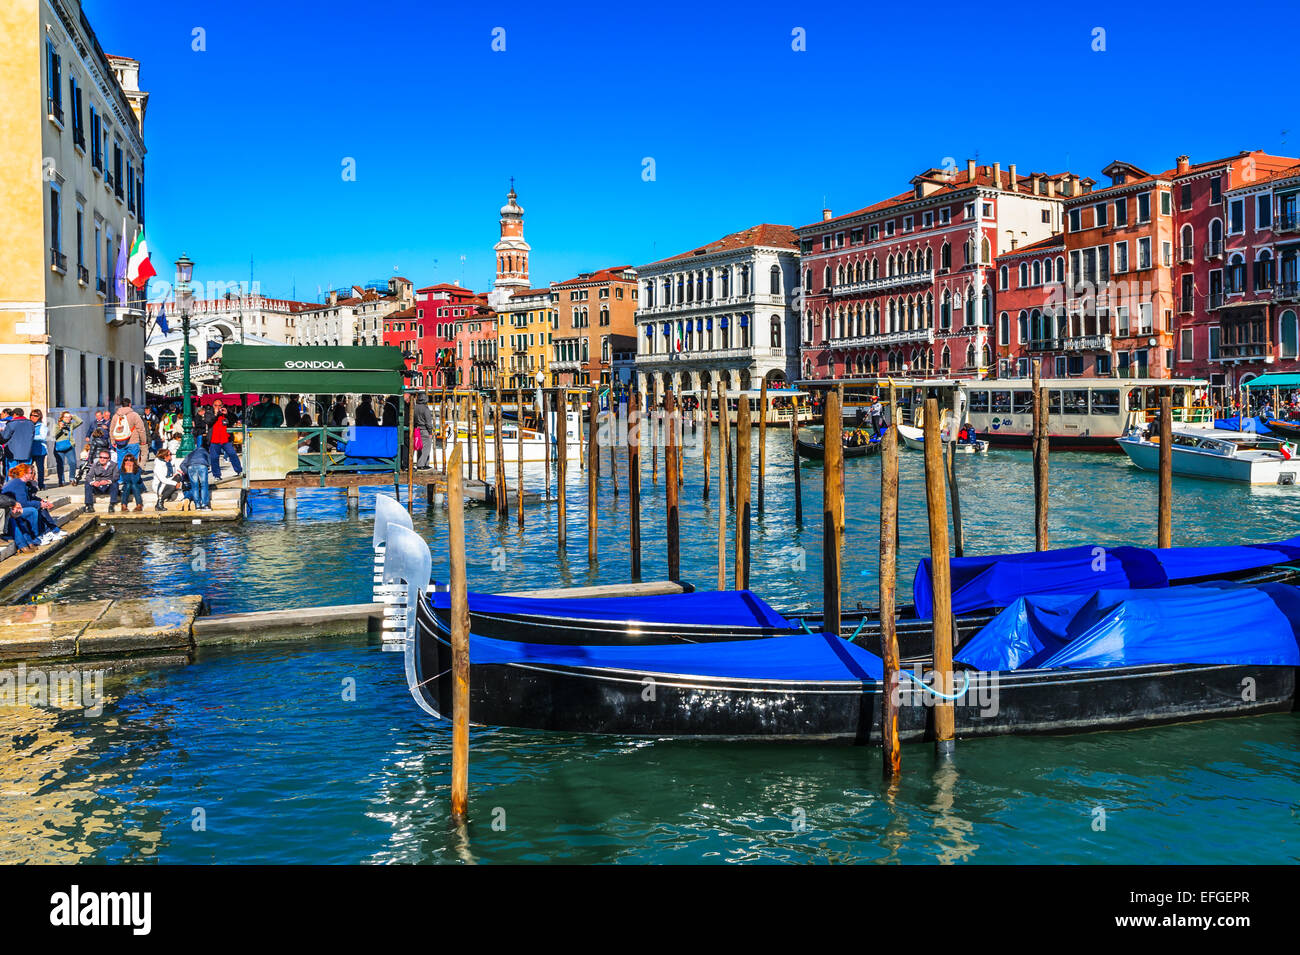 Venice, Italy. Image with gondola docked on Grand Canal and Ponte di Rialto (Rialto Bridge) in Venice. Stock Photo